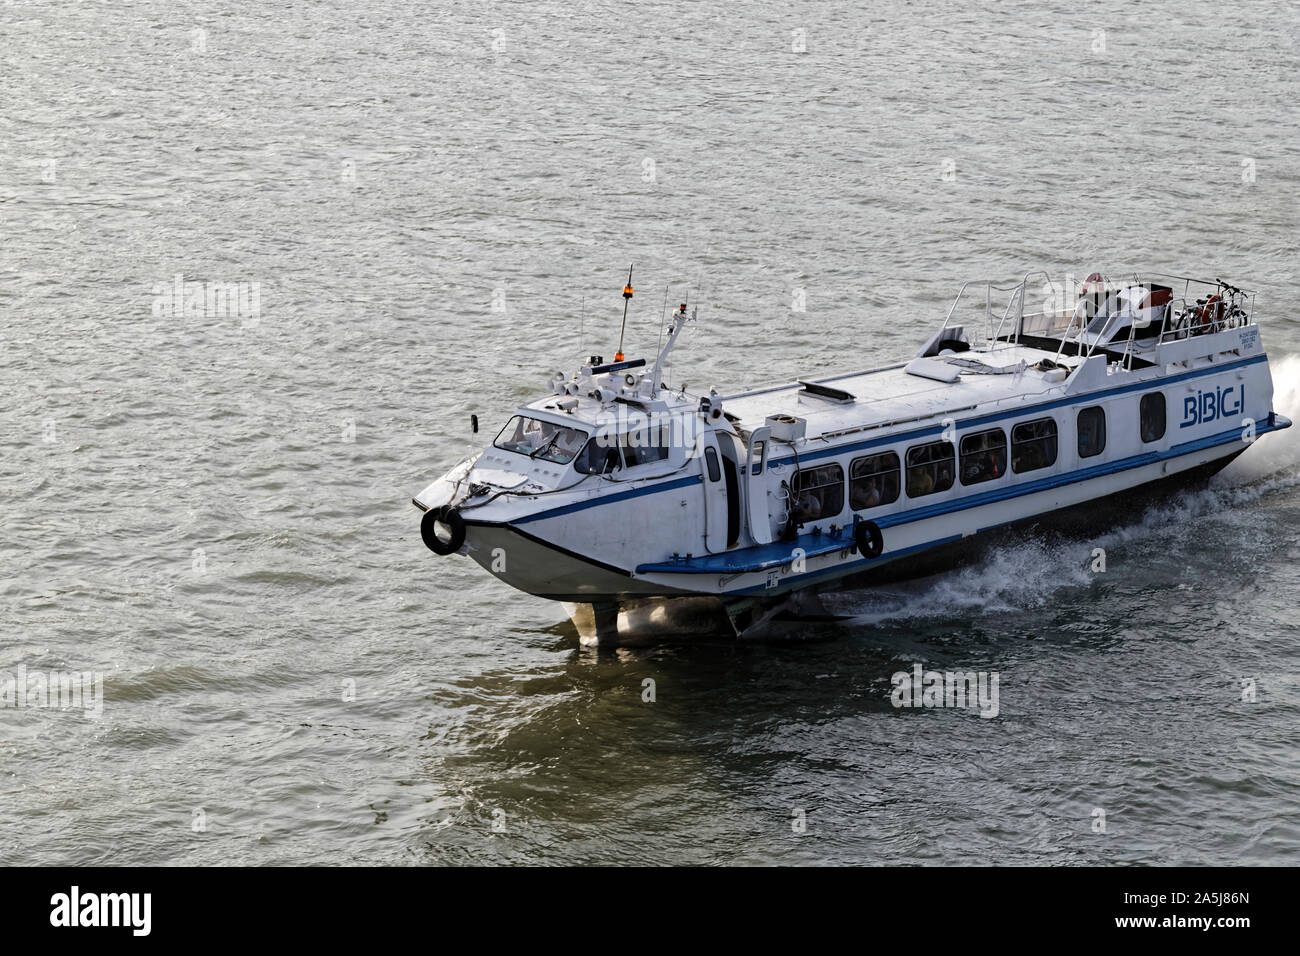 Budapest, Ungarn. 16 August, 2019. Riverboat für Touristen auf der Donau in Budapest, Ungarn. Quelle: Bernard Menigault/Alamy Stock Foto Stockfoto